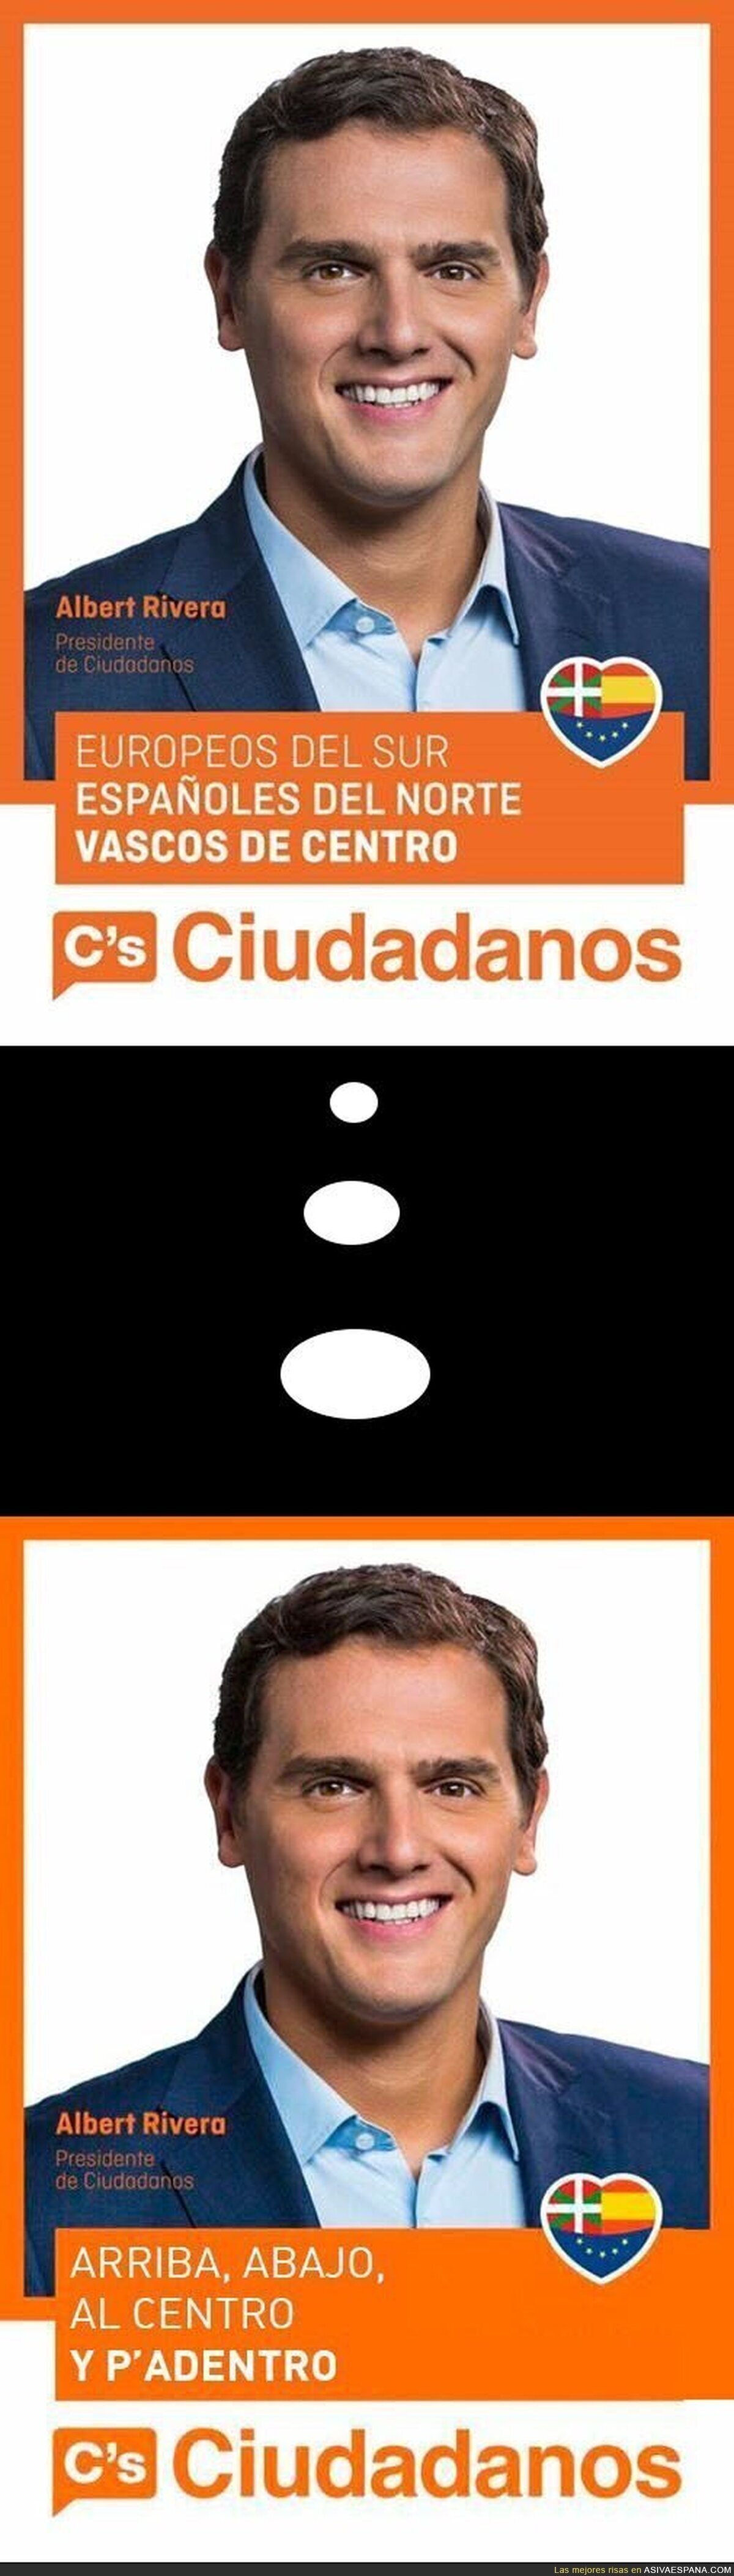 El cartel de Ciudadanos para las elecciones vascas